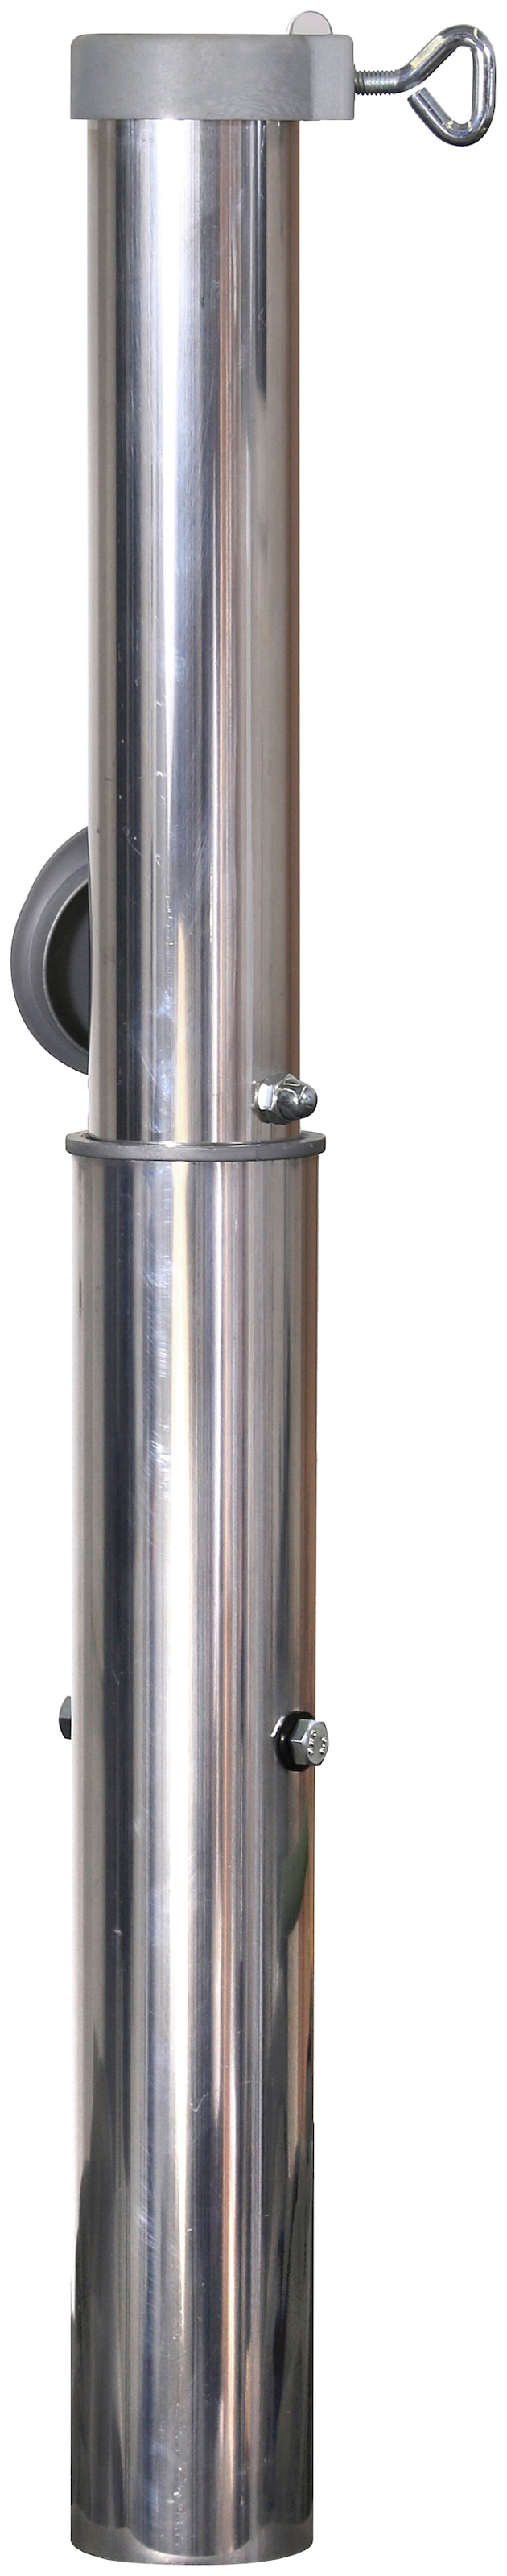 Schneider Schirme Bodendübel, Bodenhülse für 55 mm Rohr